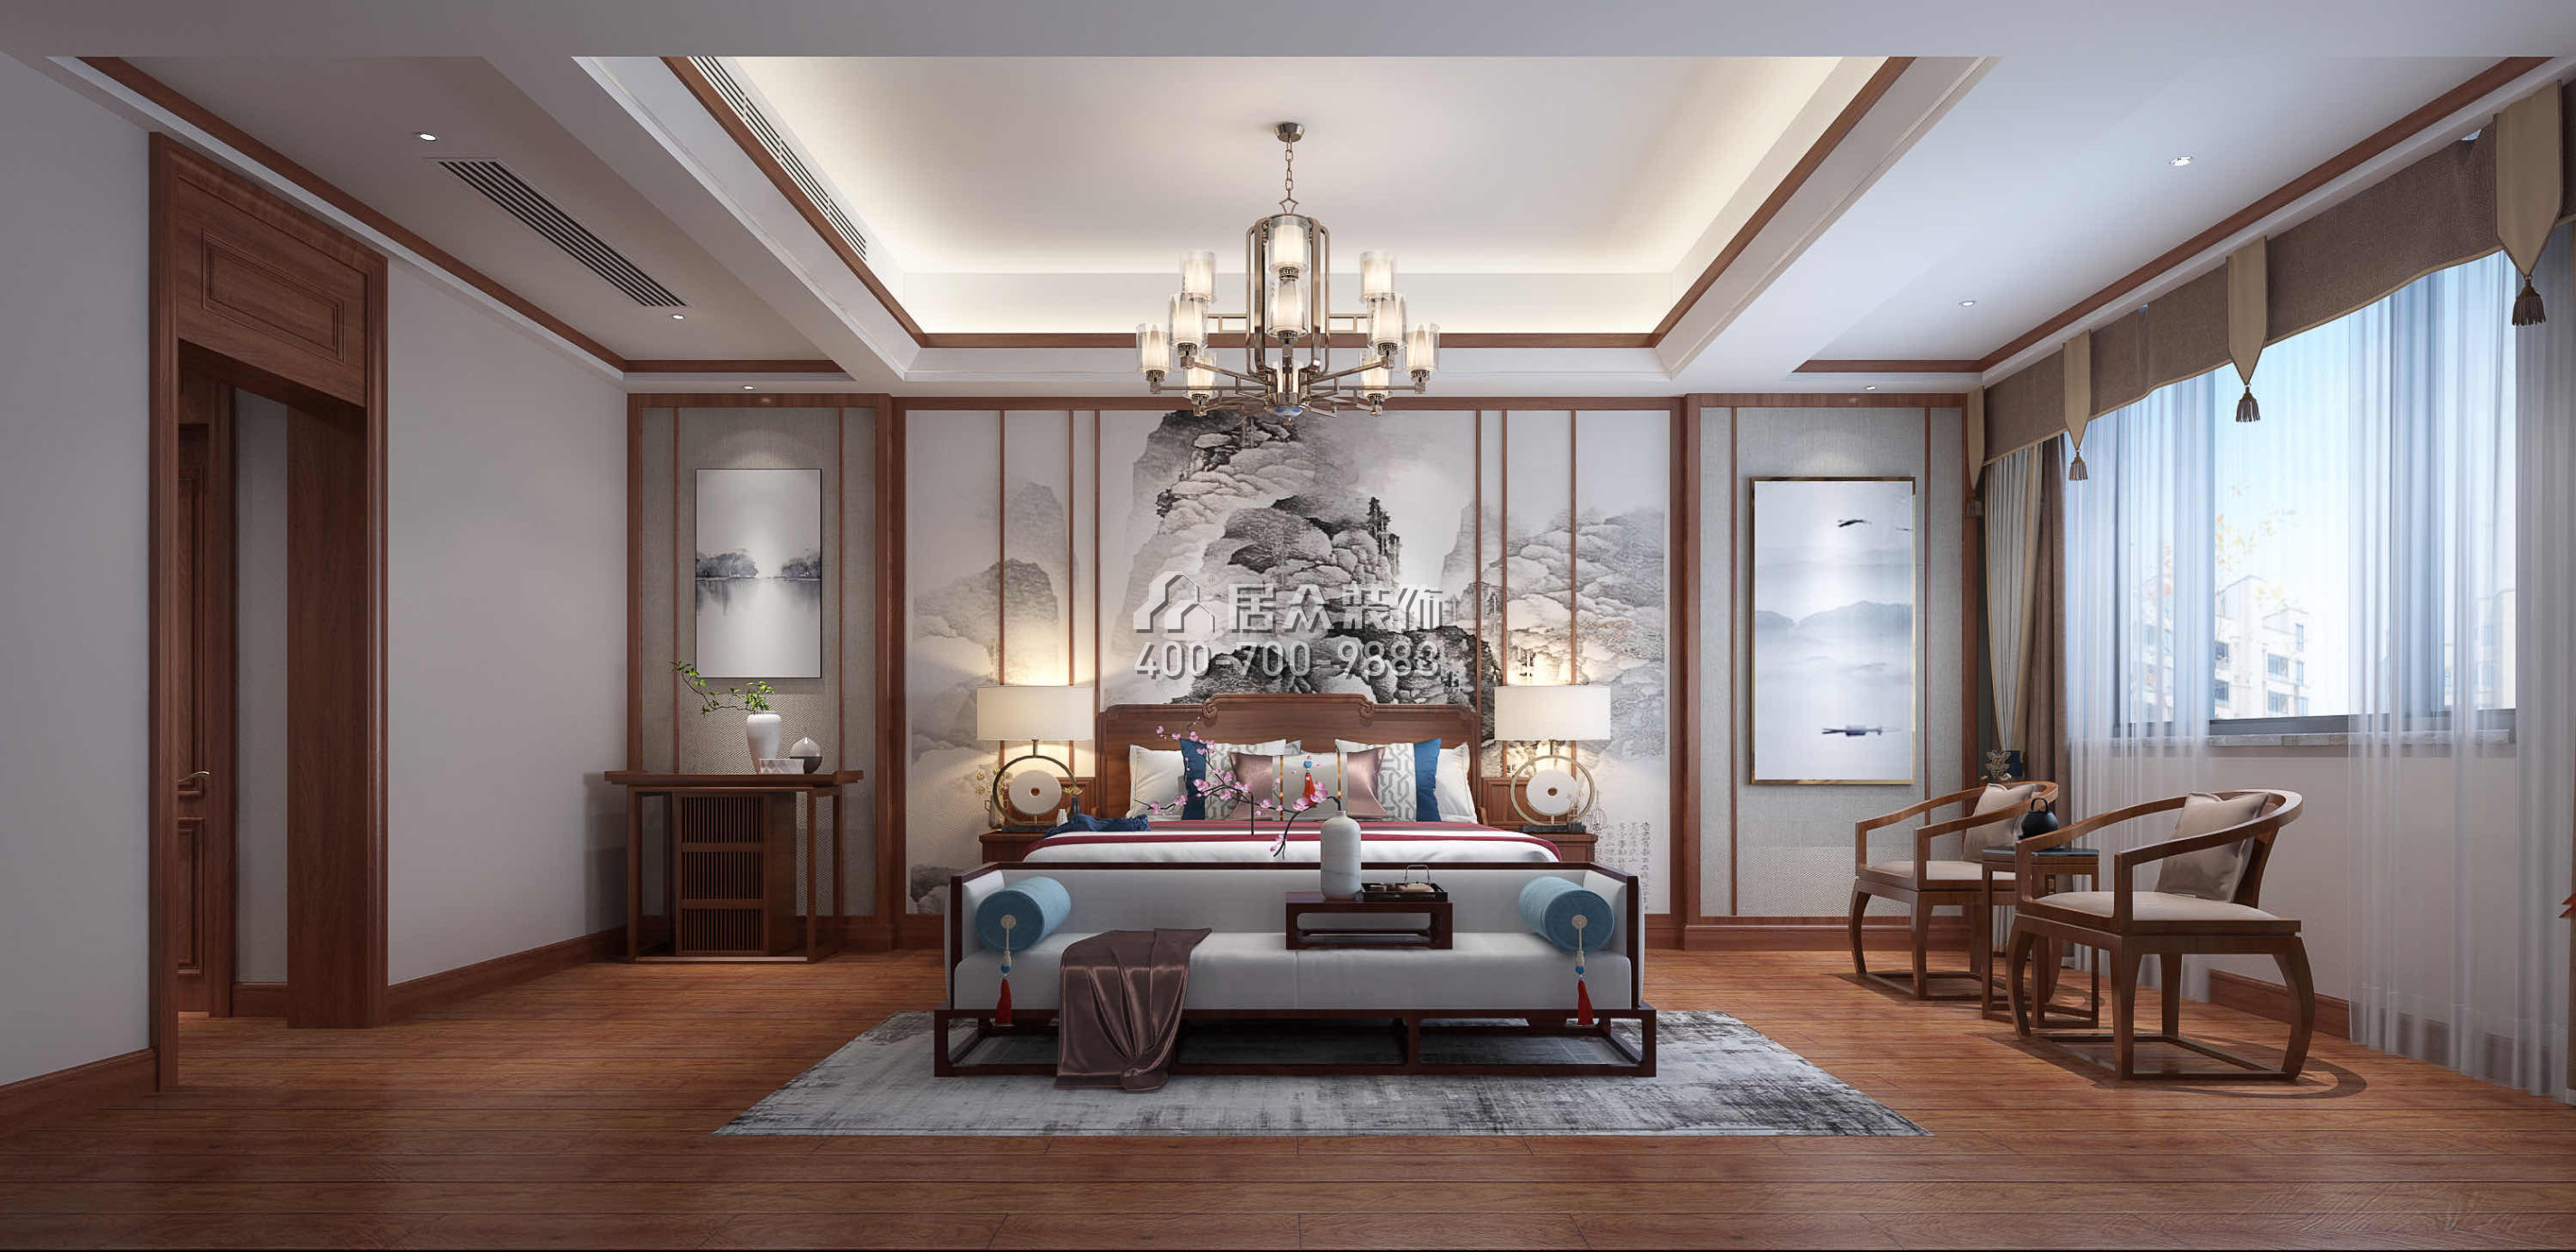 萬豐上院600平方米中式風格別墅戶型臥室裝修效果圖